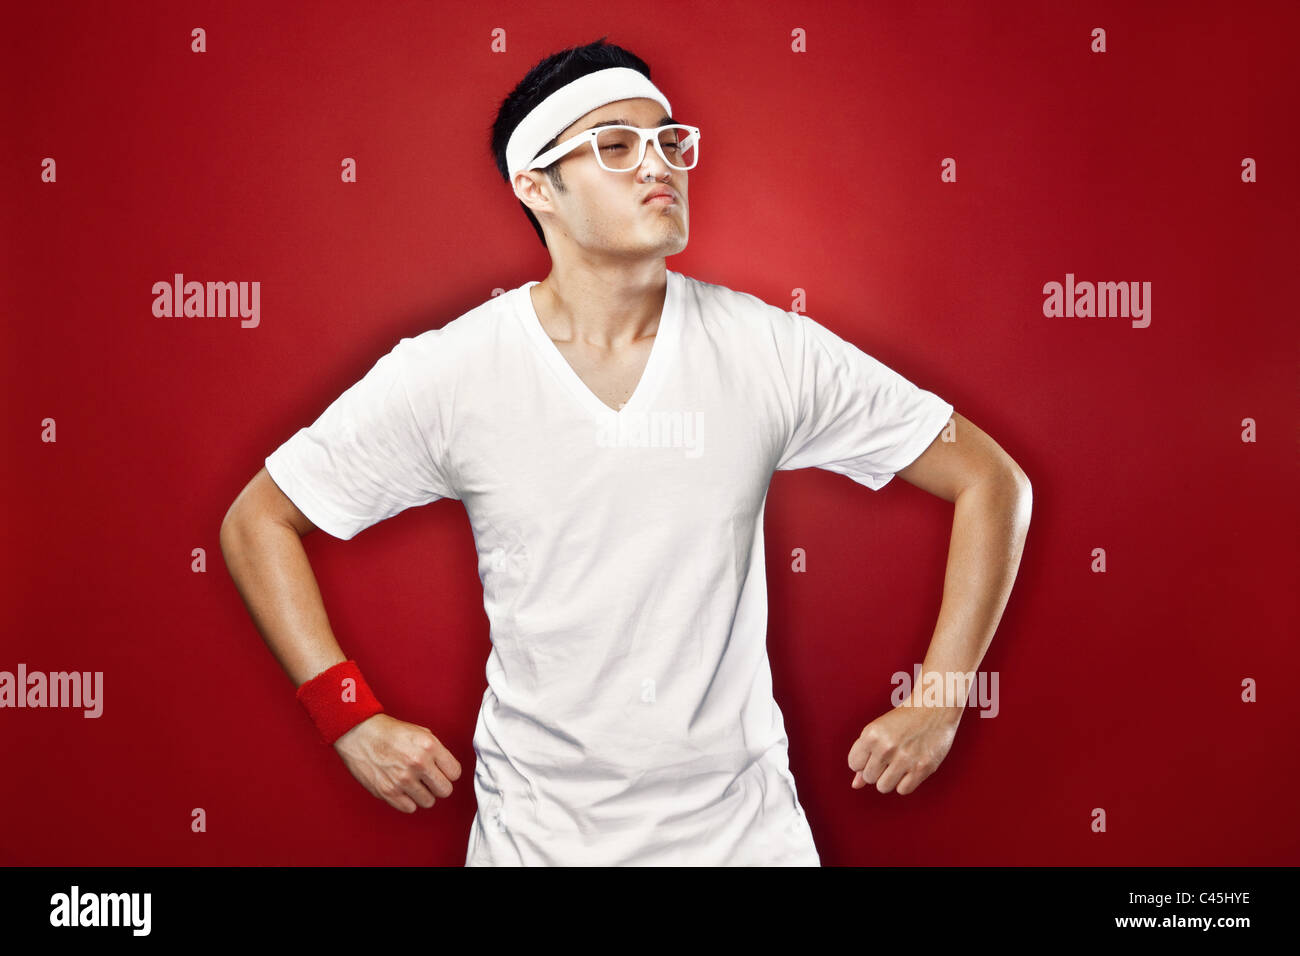 Studio-Porträt von asiatischen männlichen Teenager tun eine Superhelden-Pose in weißen athletischer Gang & nerdy Brille vor einem roten Hintergrund. Stockfoto